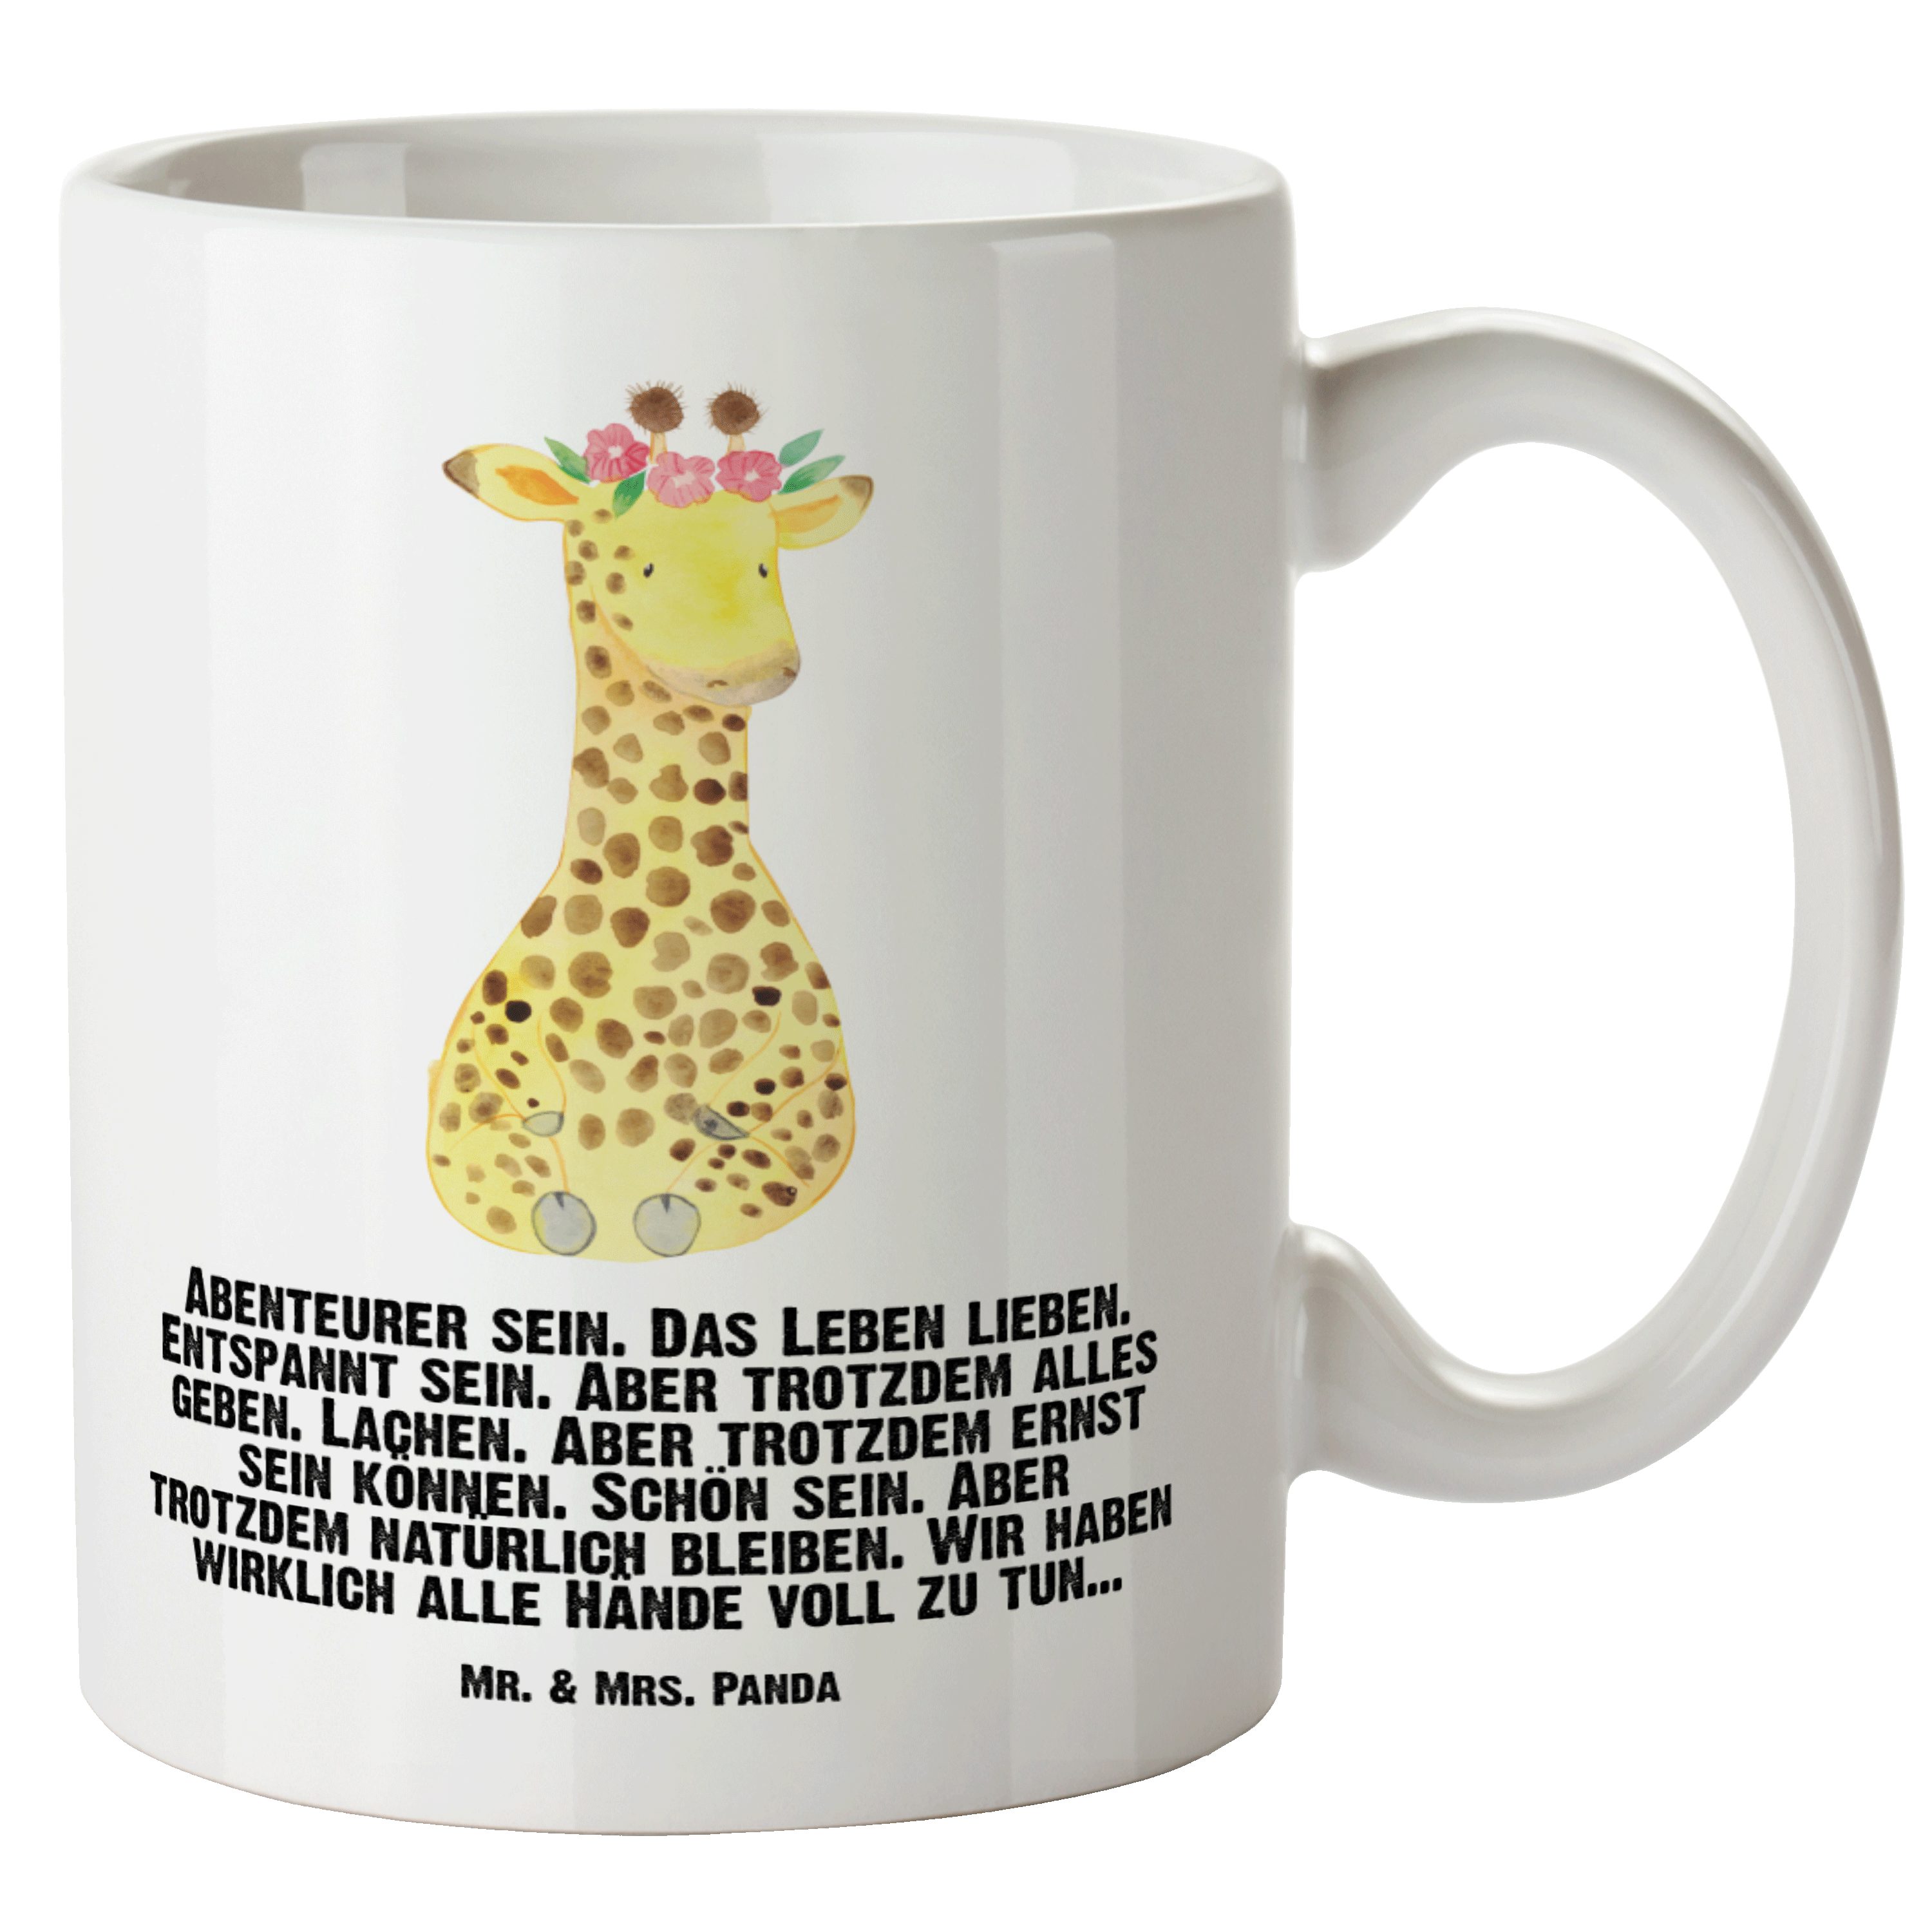 Mr. & Mrs. Panda Tasse Giraffe Blumenkranz - Weiß - Geschenk, Grosse Kaffeetasse, XL Becher, XL Tasse Keramik